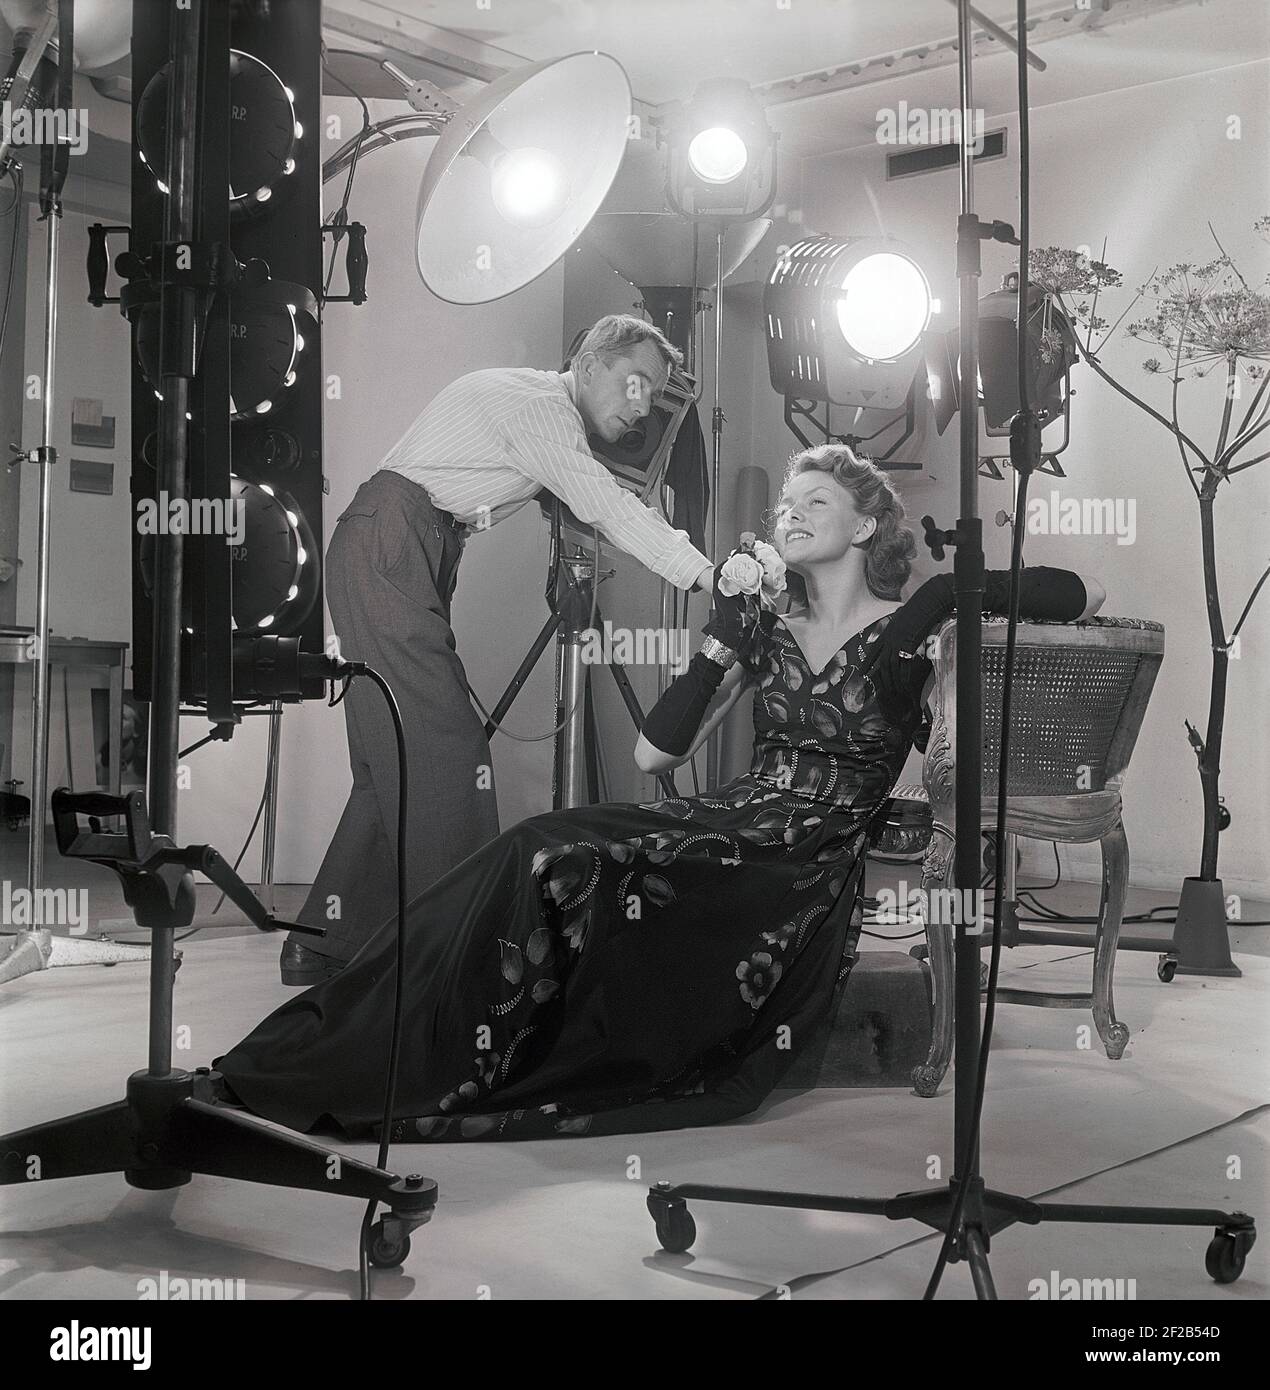 photographe et mannequin de mode des années 1940. Une jeune femme modèle est dans un studio de photographes reçoit quelques instructions finales avant de prendre les photos. Les lampes et la caméra sont visibles. Suède 1949 réf. AT7-8 Banque D'Images